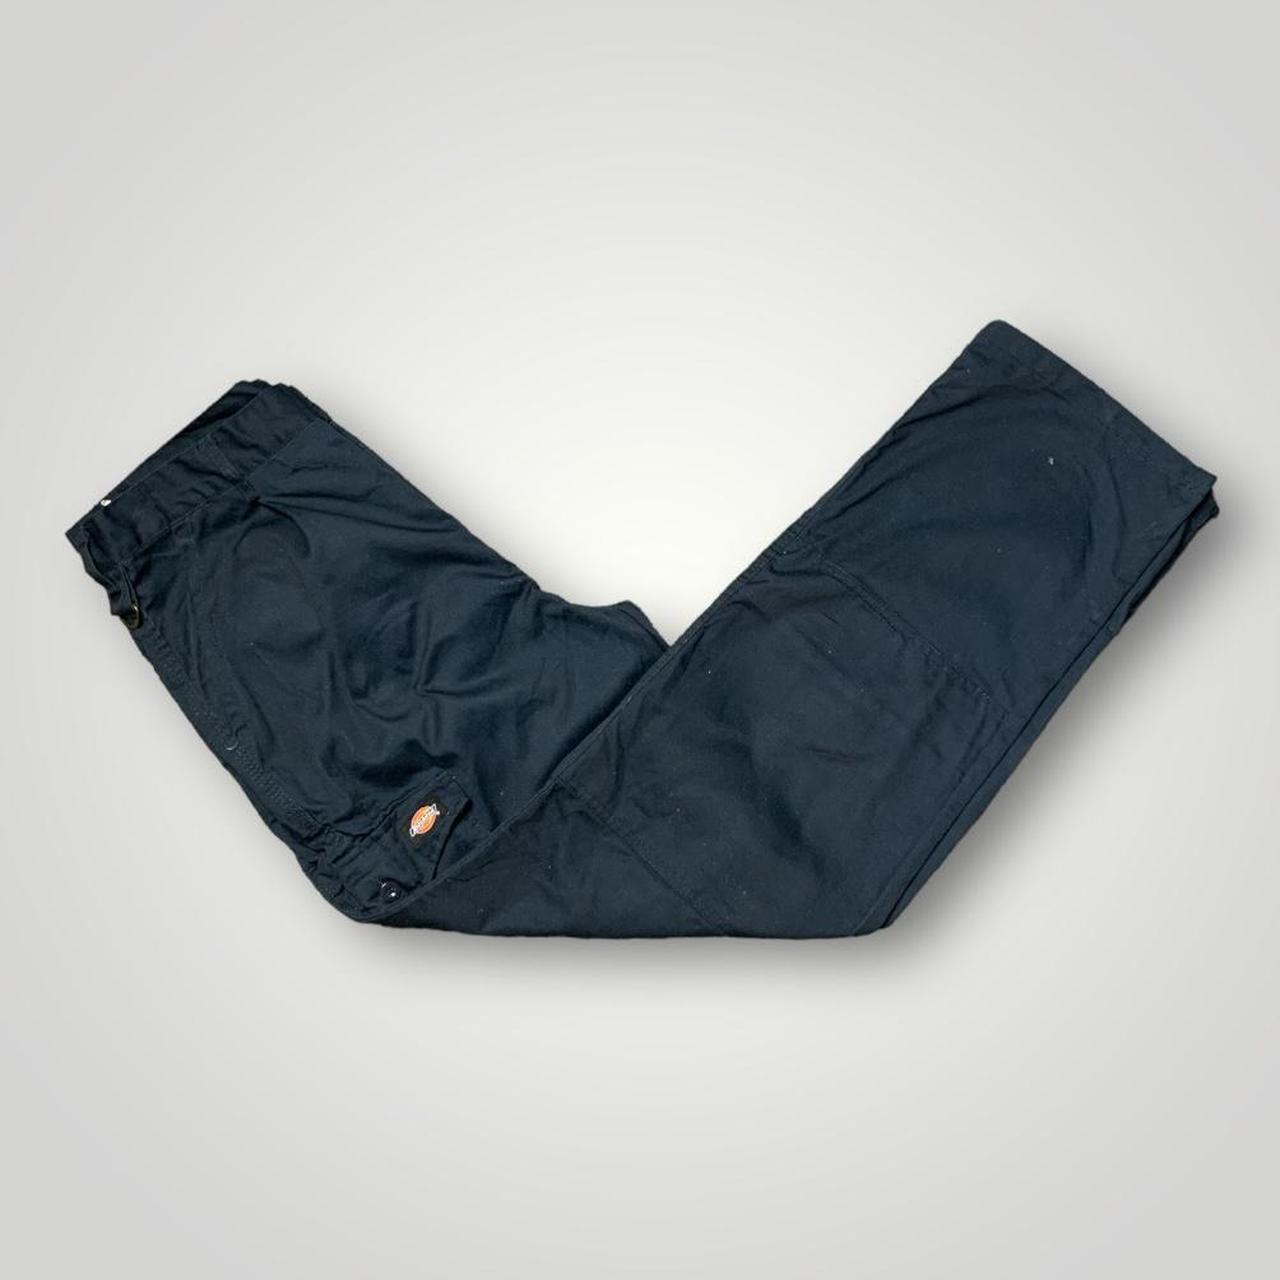 Dickies Trousers 

Navy blue dickies cargo pants.... - Depop